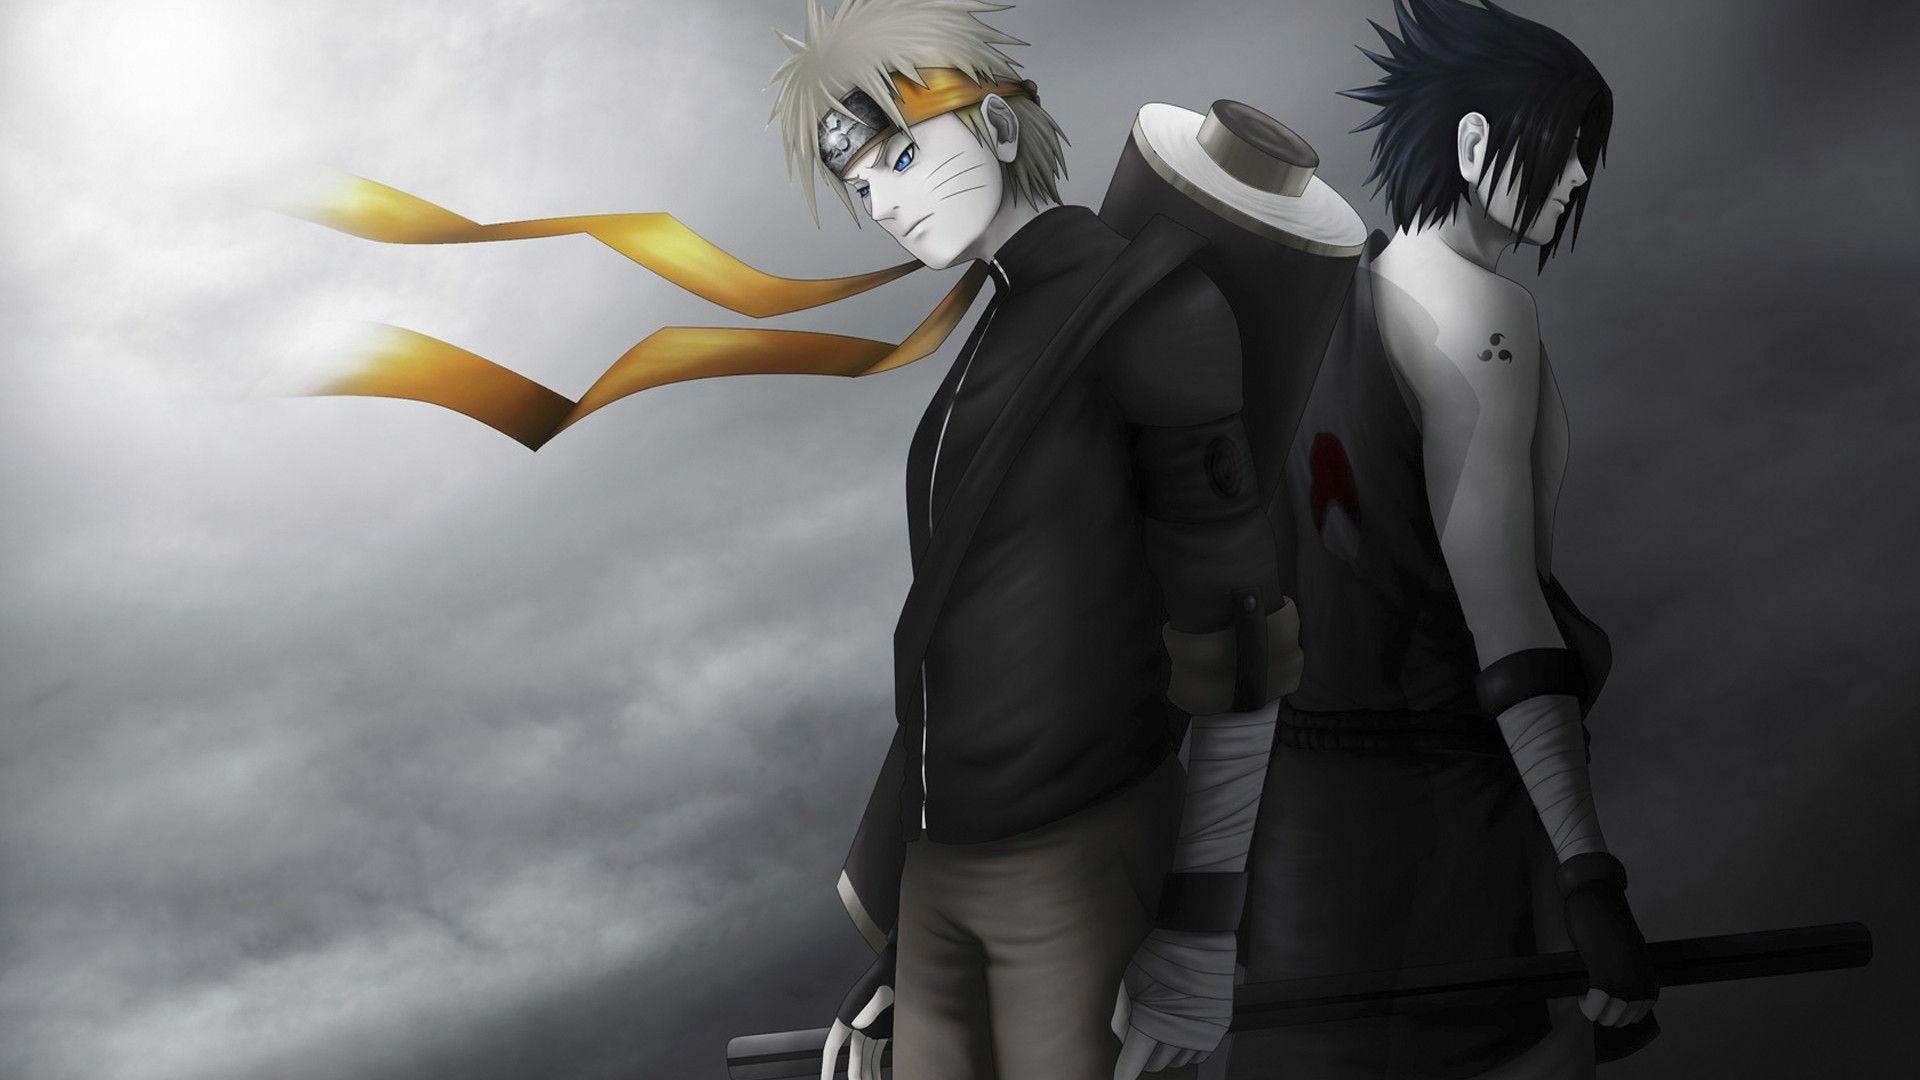 Naruto-sasuke-anime-wallpaper-hd naruto cartoon HD free wallpapers ...